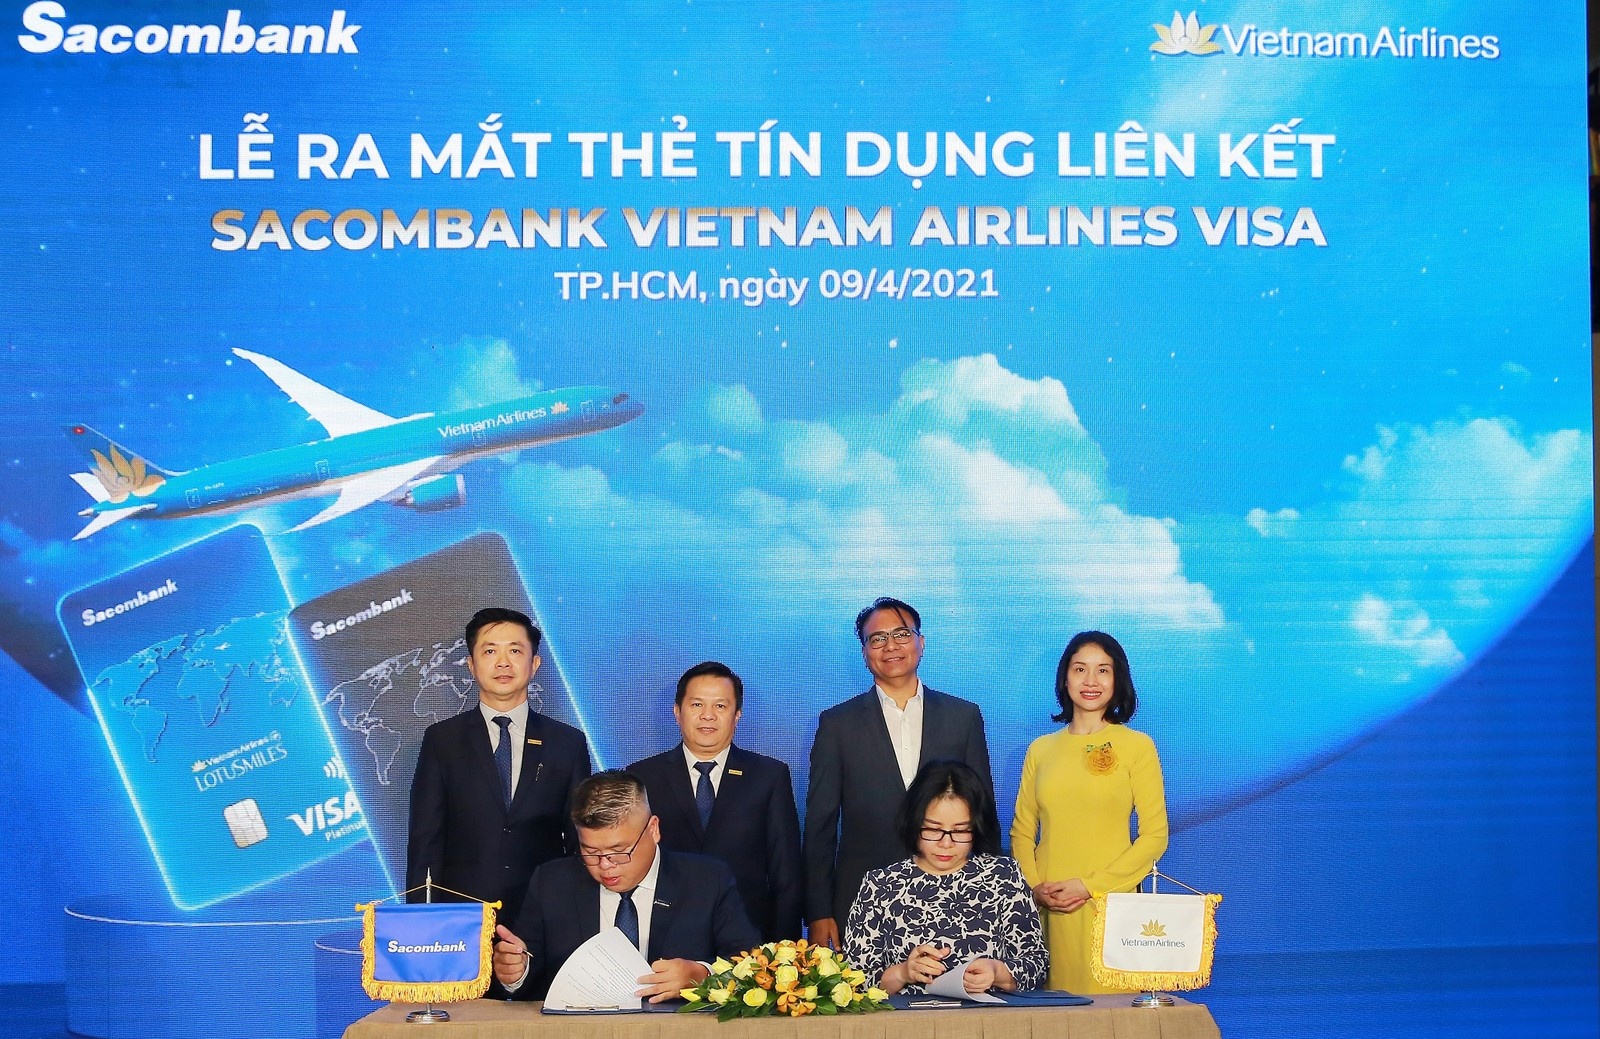 sacombank hop tac voi vietnam airlines ra mat the tin dung quoc te dang cap